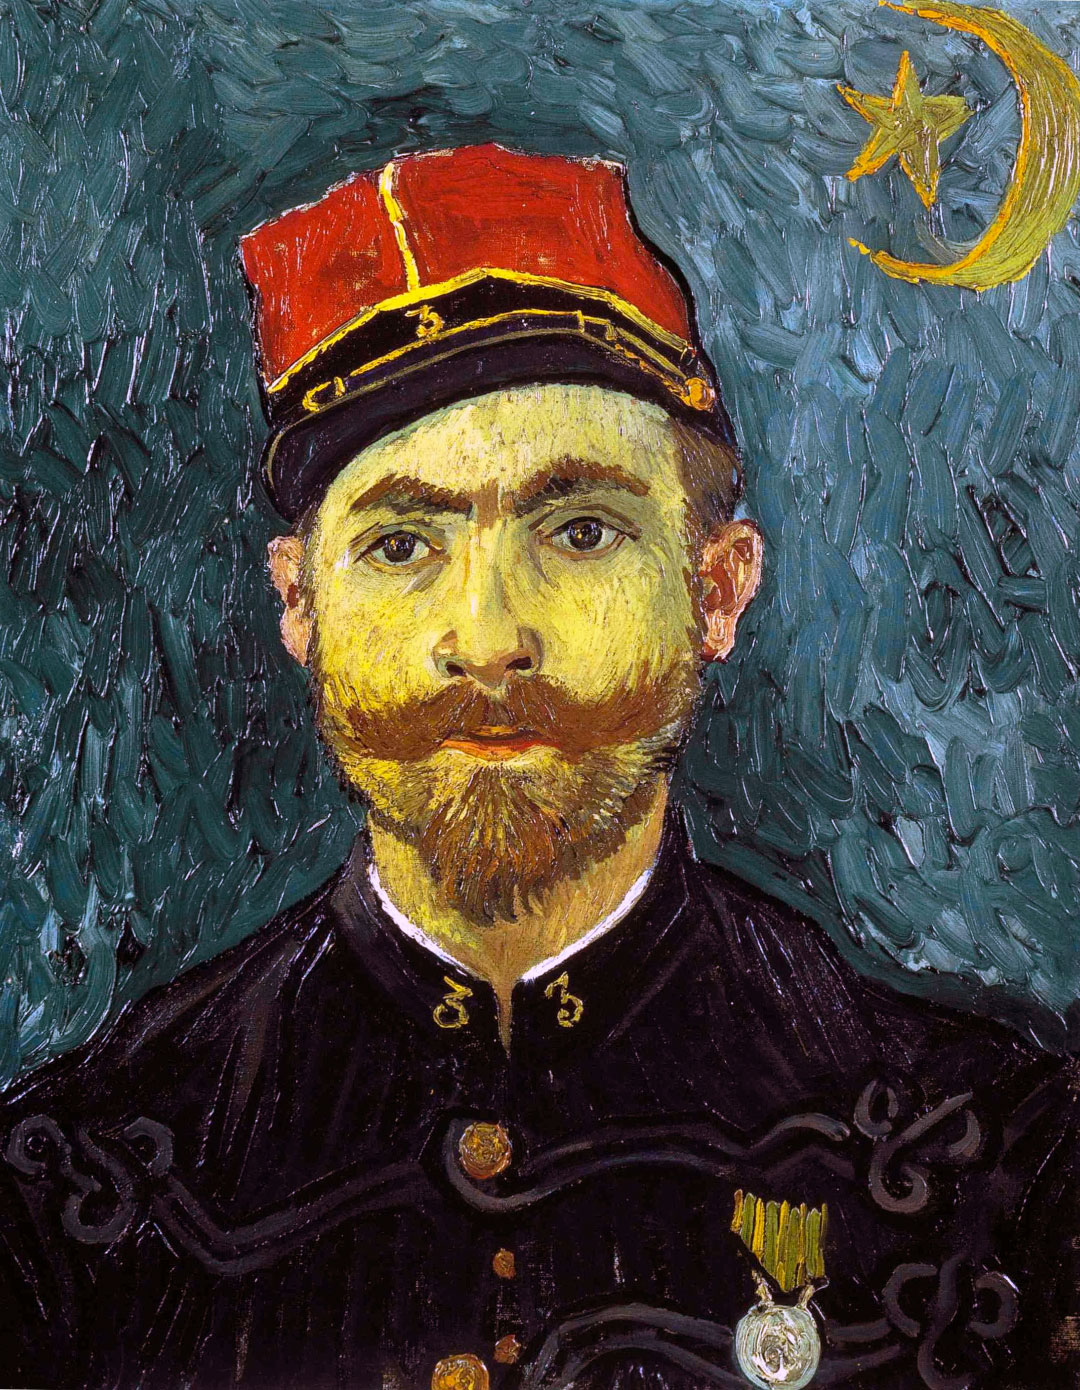 Rtitratto di Milliet - portrait - Van Gogh